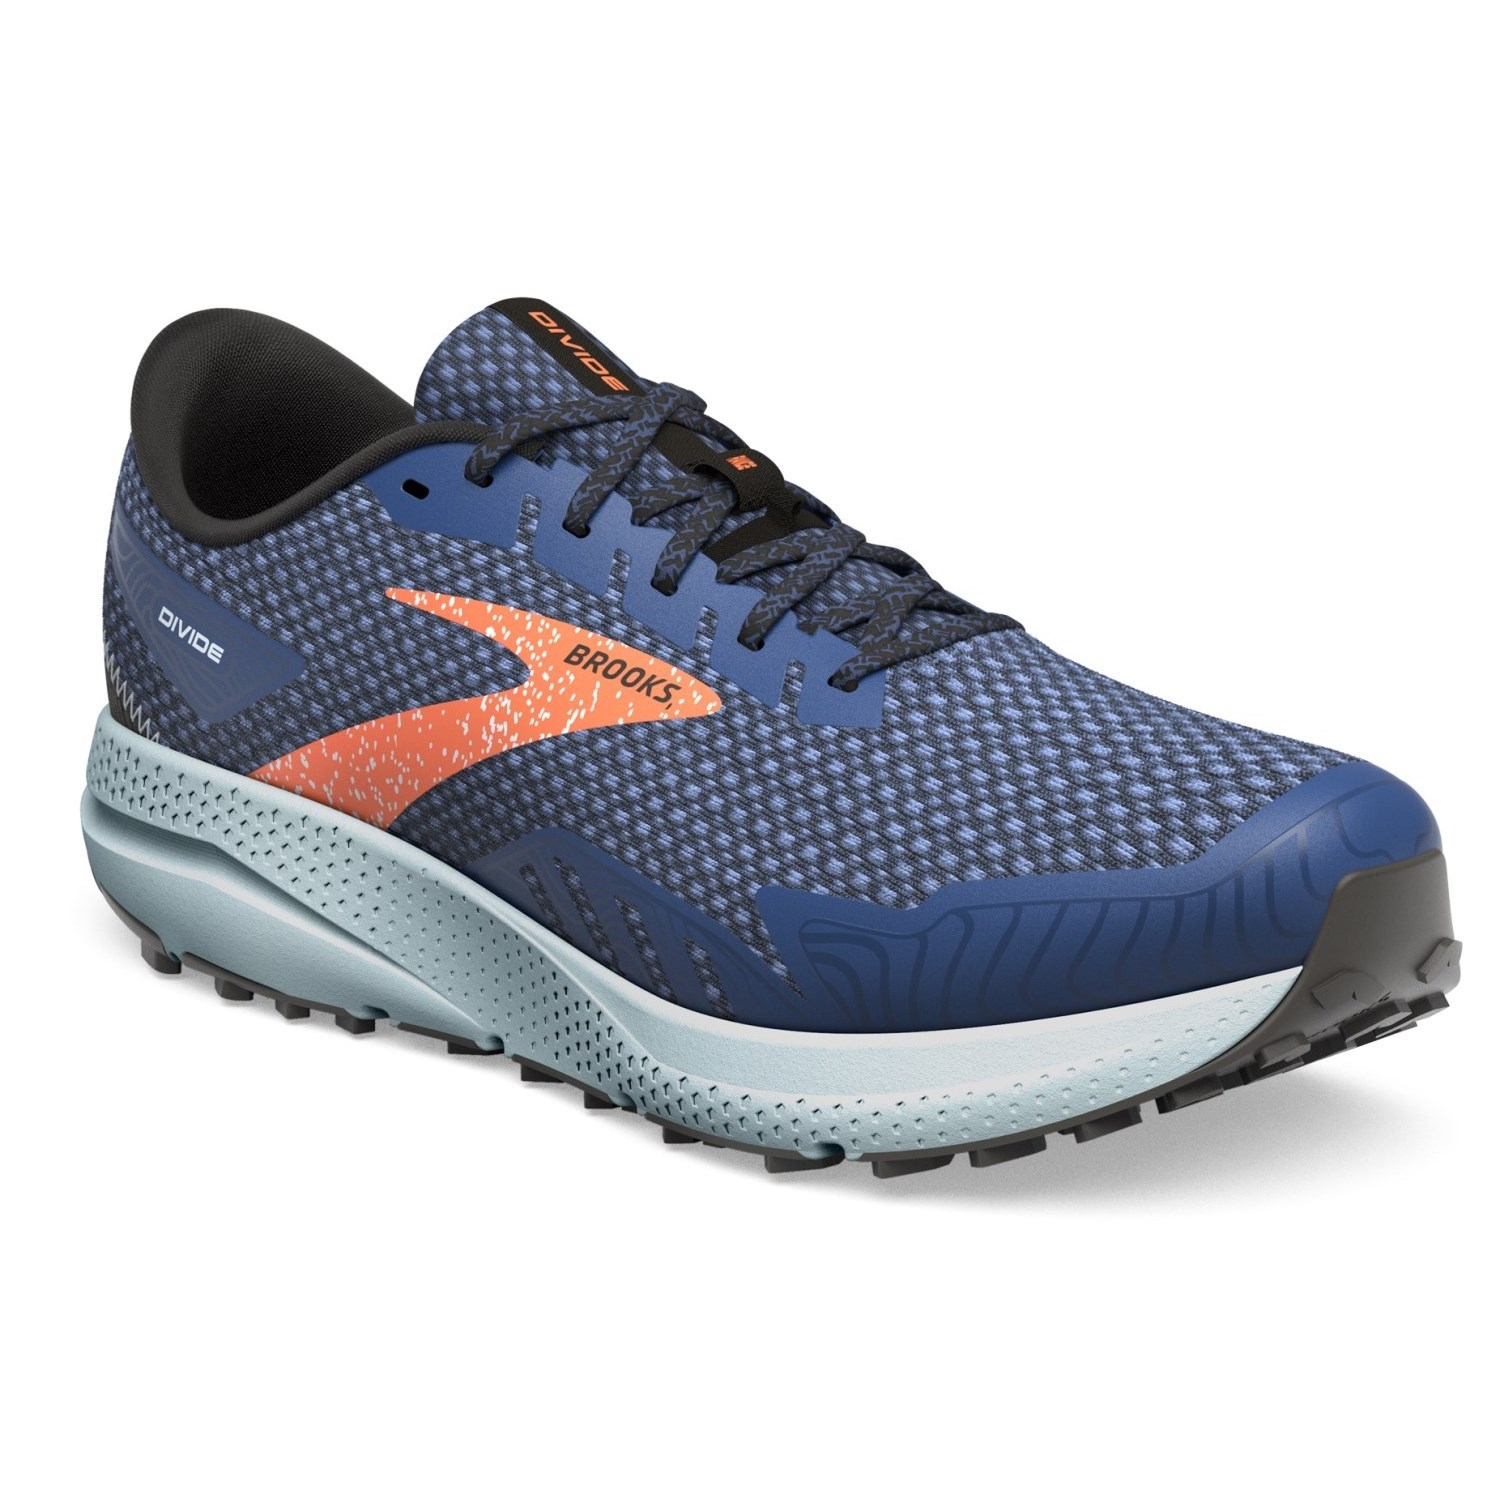 Brooks Divide 4 - Mens Trail Running Shoes - Blue/Navy/Fireracker ...